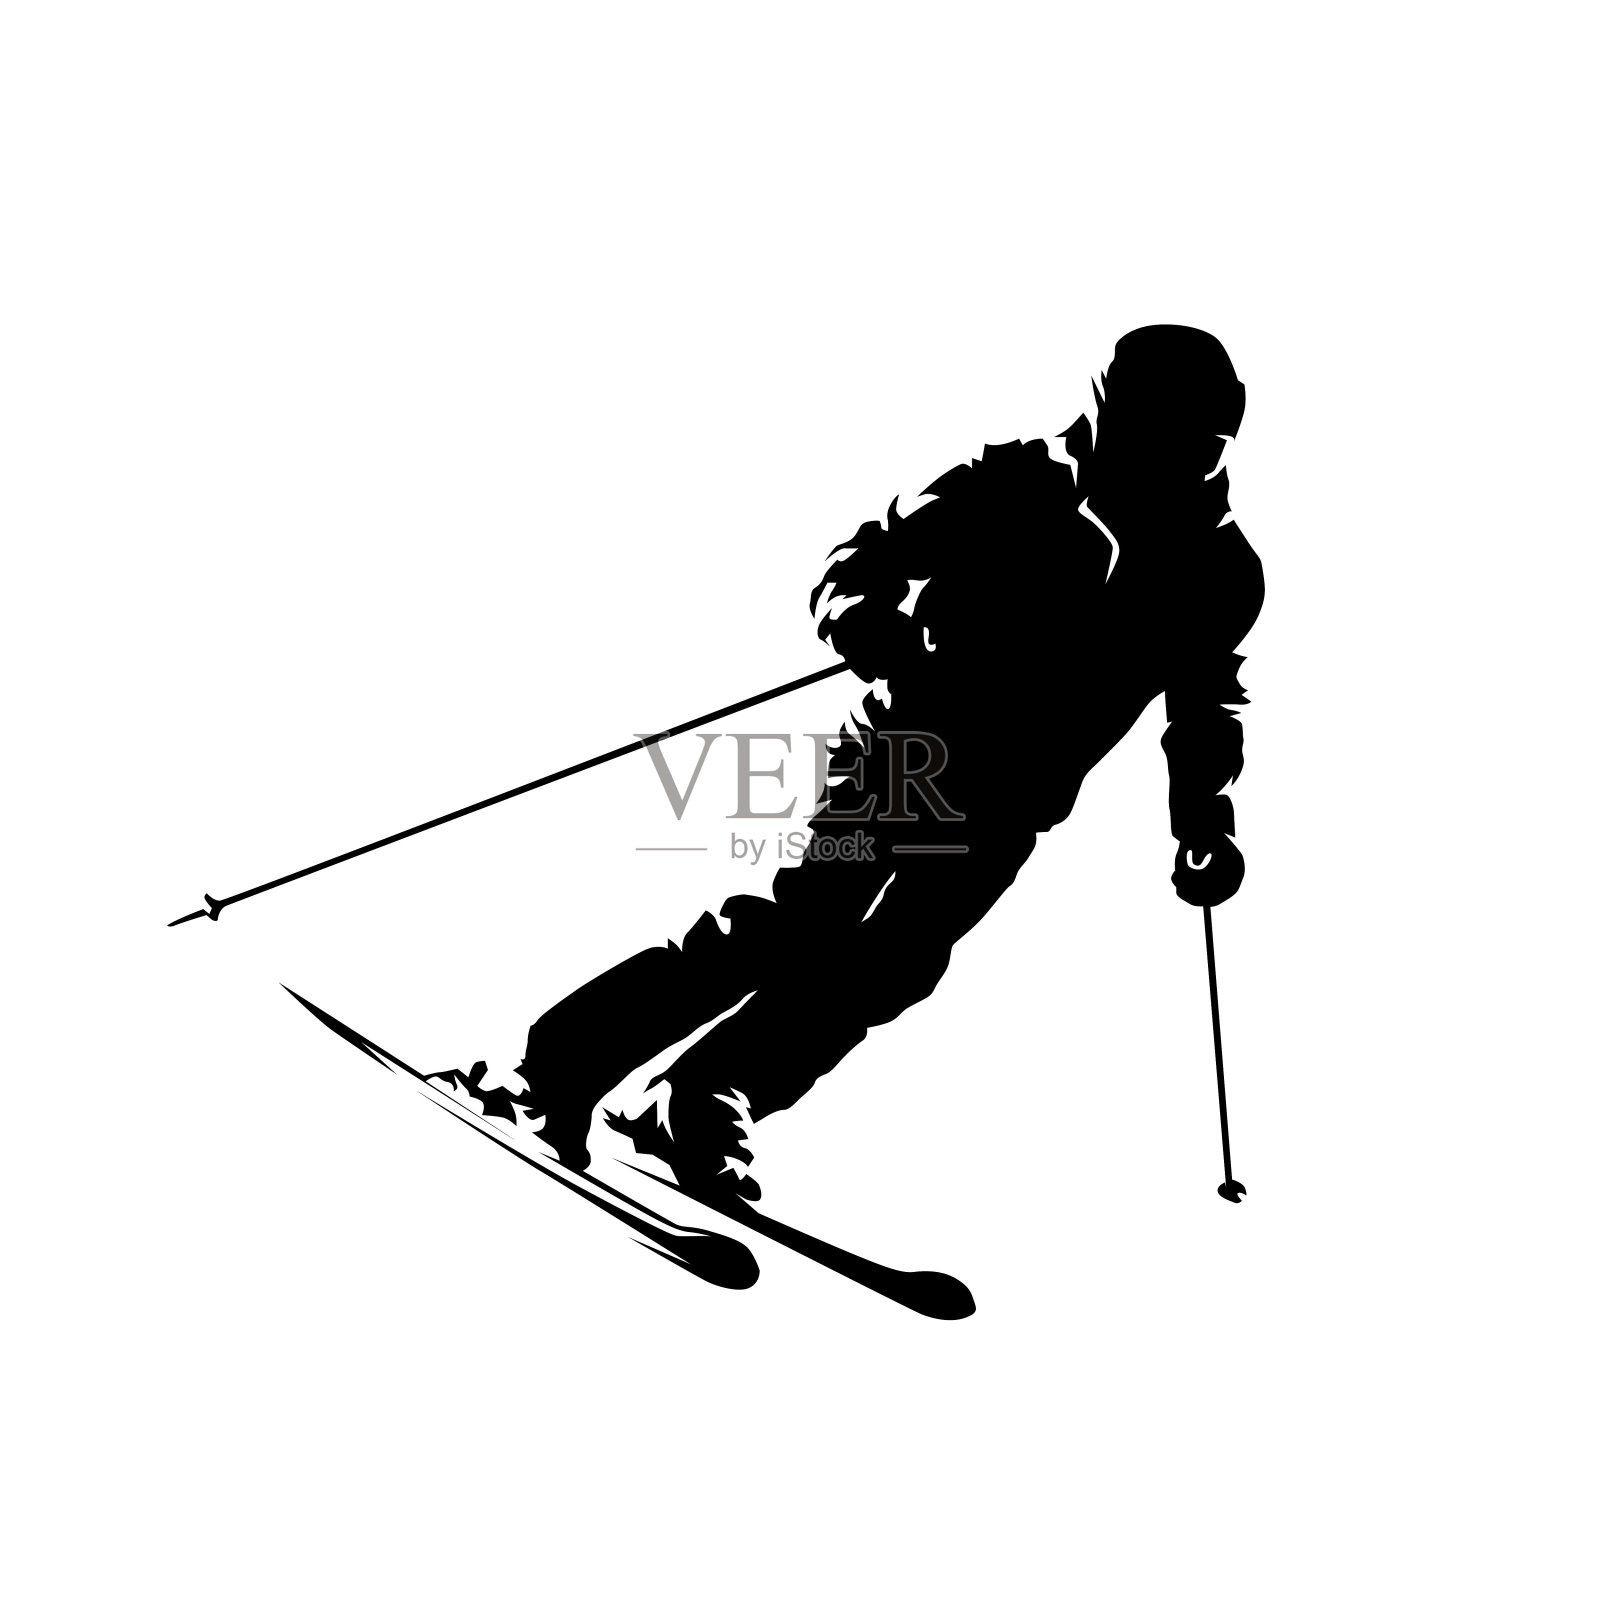 快乐的老年人冬季滑雪风景名胜免费下载_jpg格式_3840像素_编号44179877-千图网